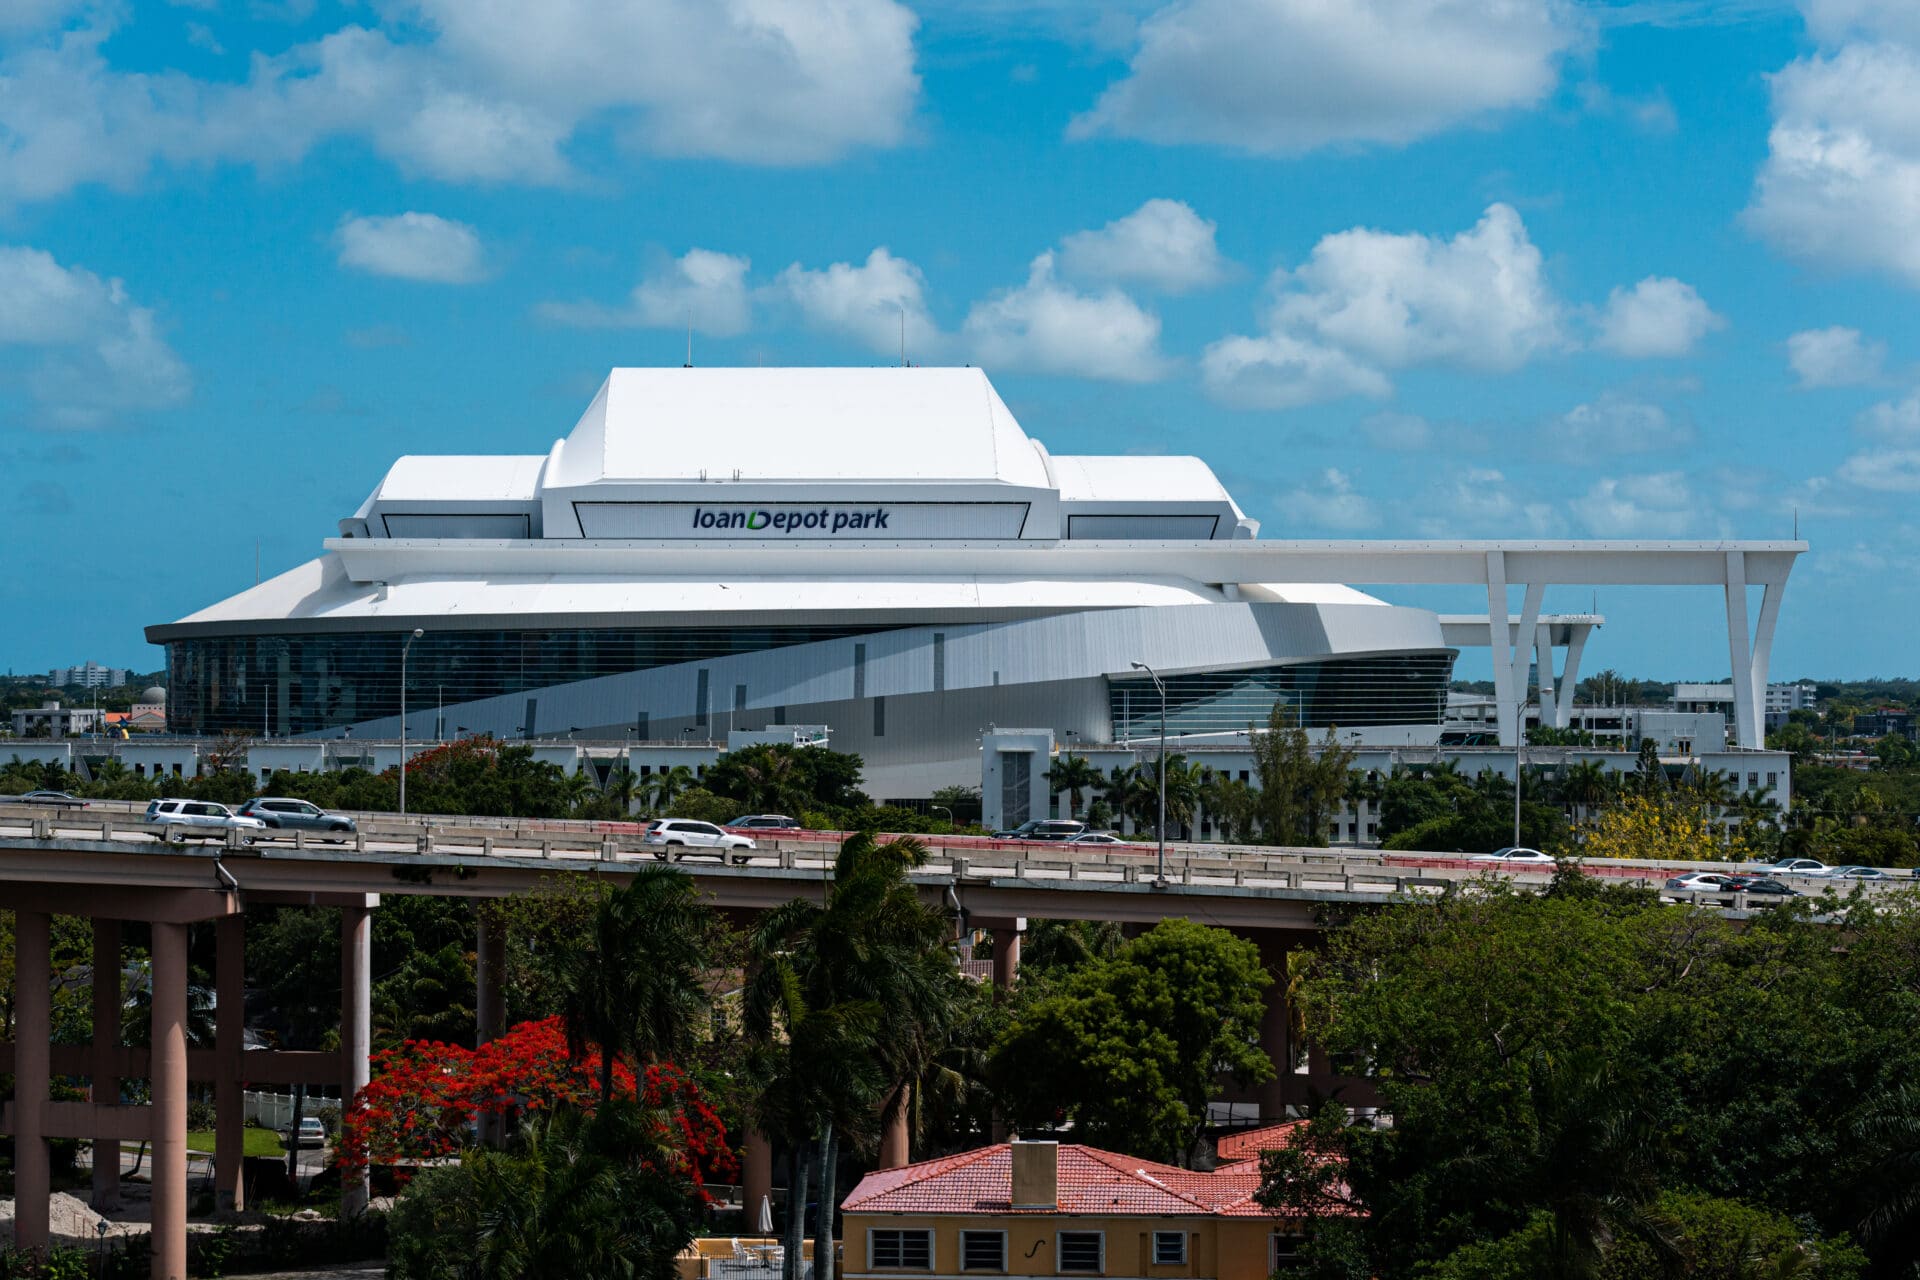 Miami's loanDepot park joins OVG Stadium Alliance - VenuesNow